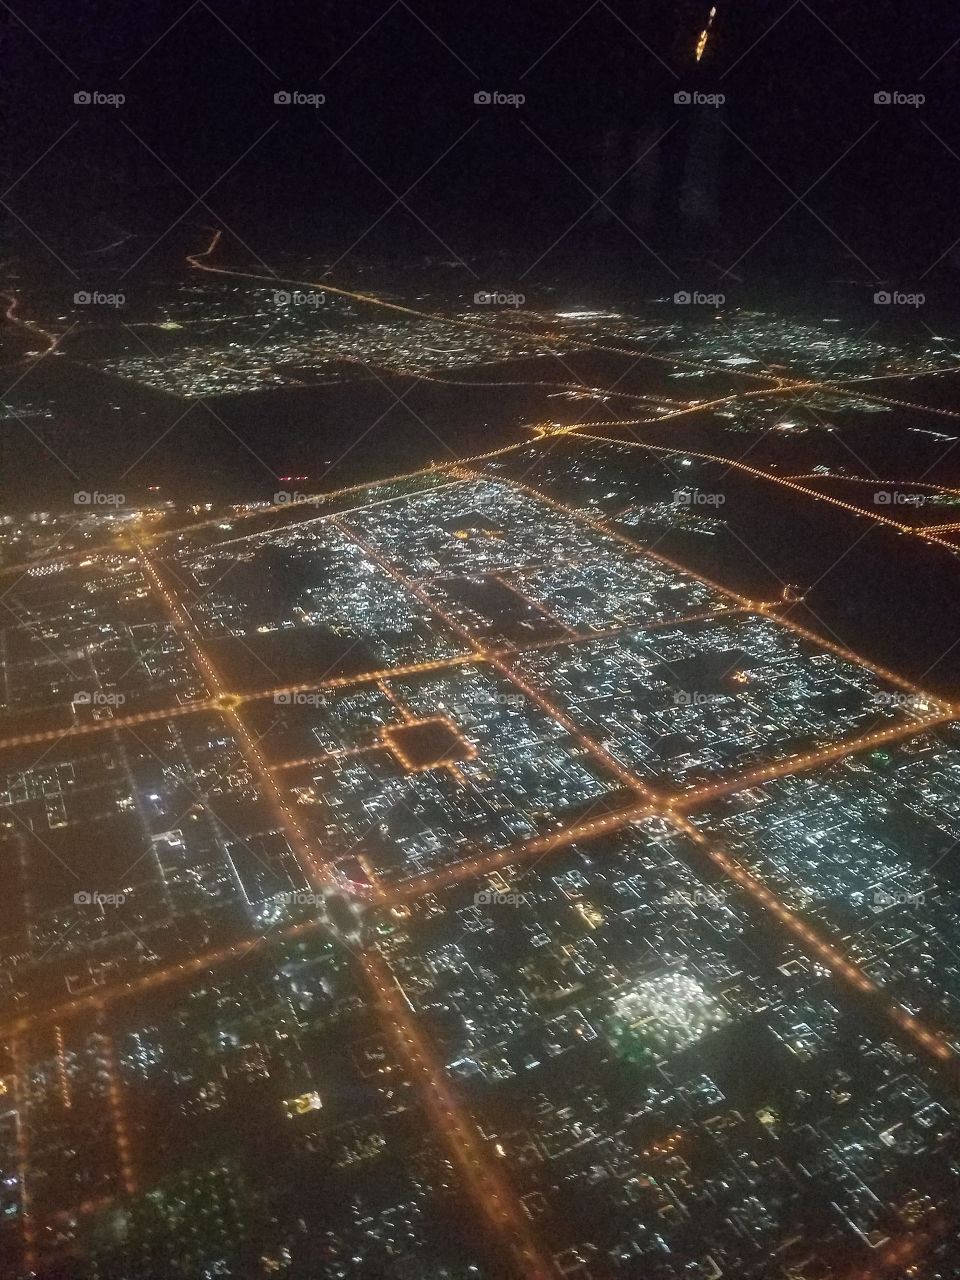 Dubai from the sky